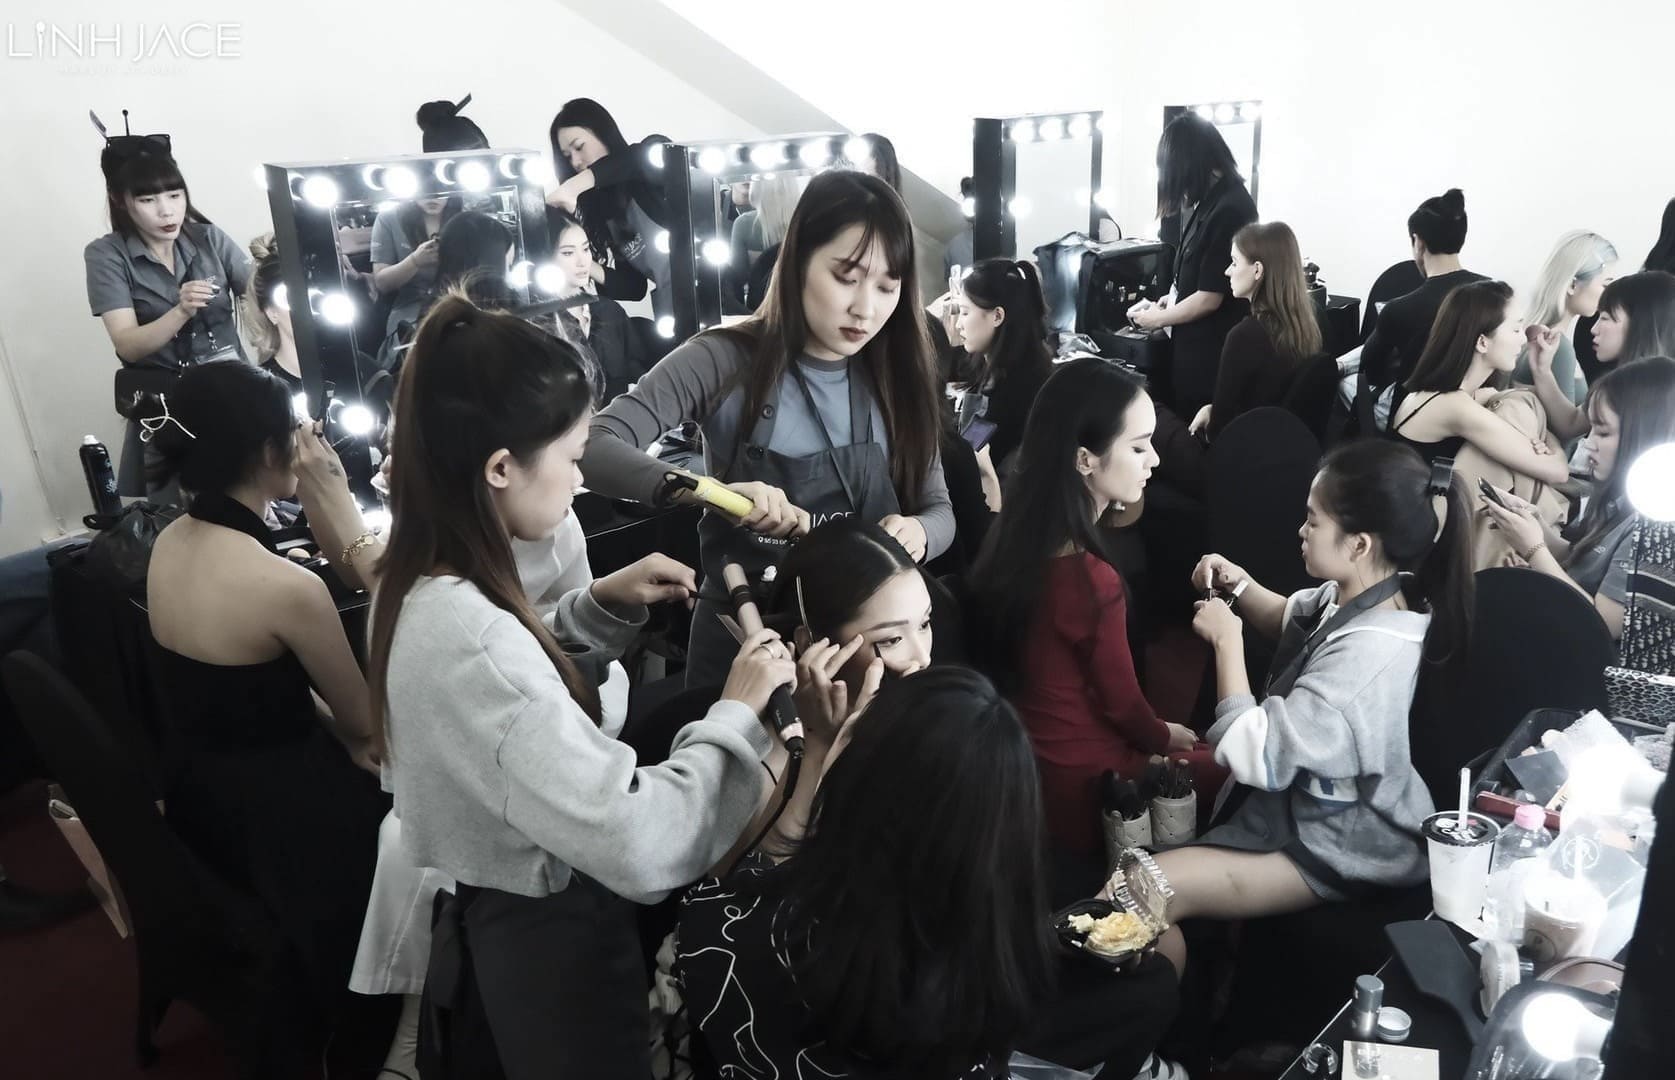 Linh Jace Makeup Academy